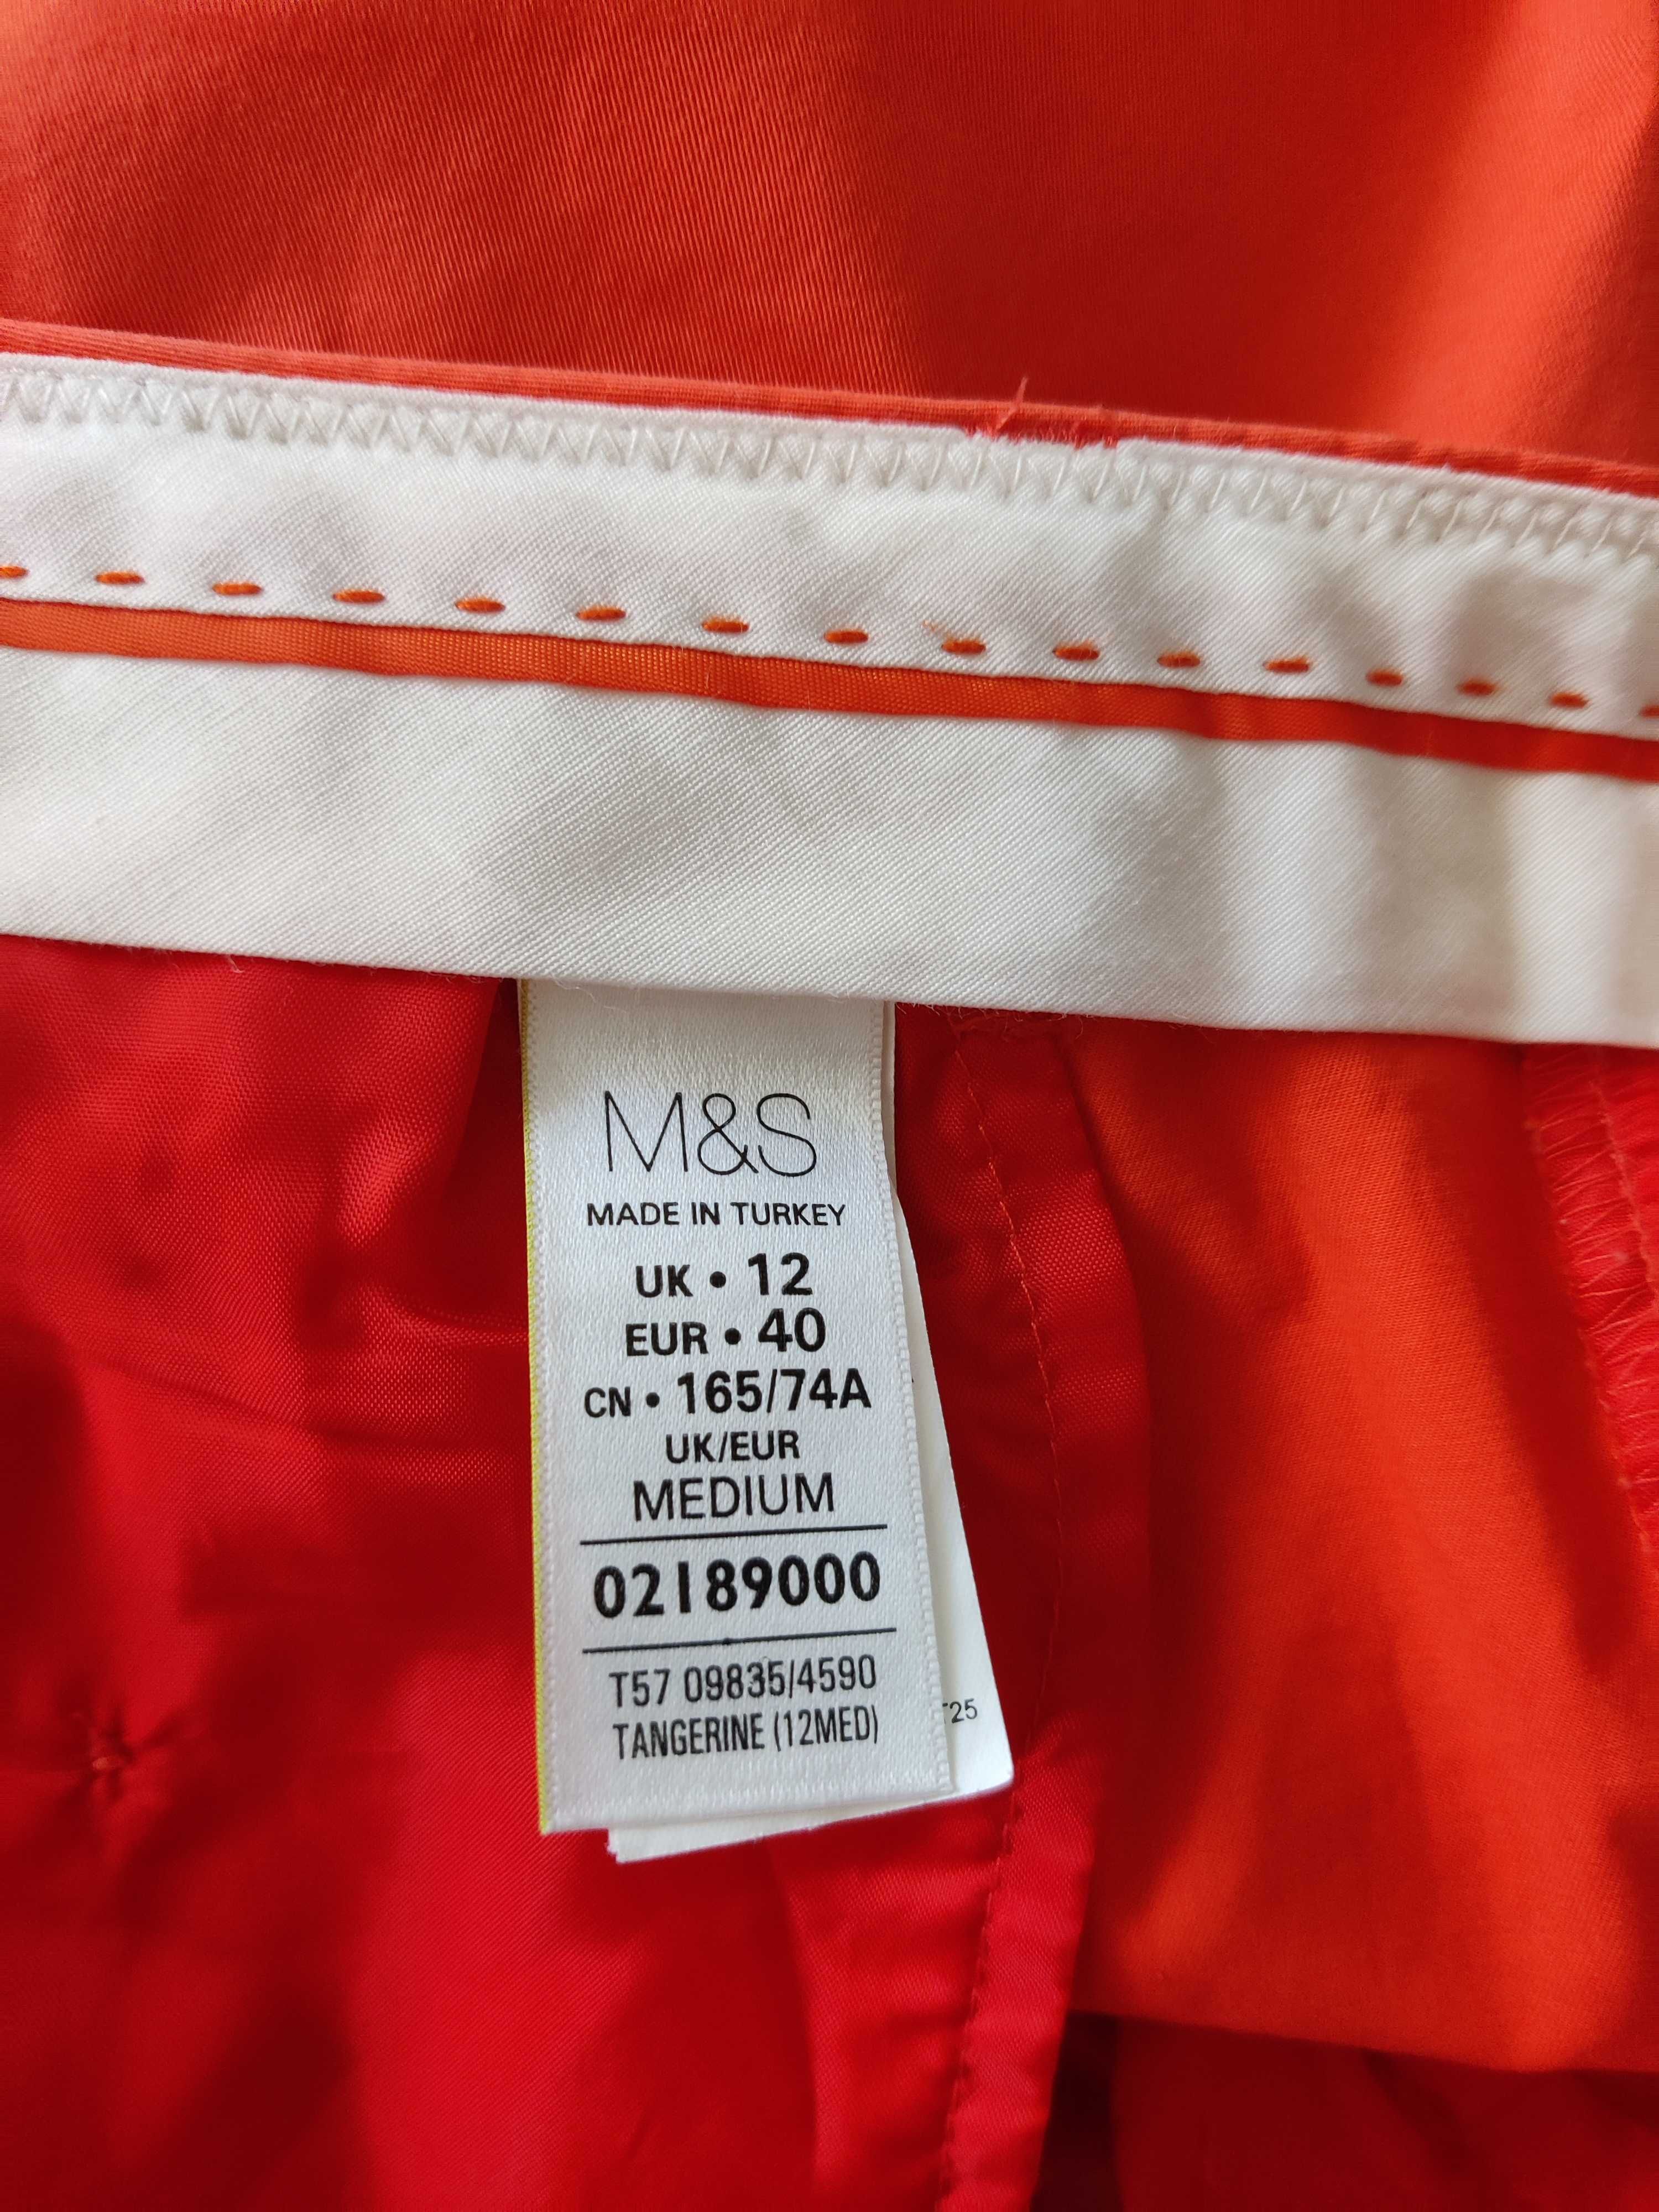 Mam do sprzedania spodnie firmy M&S rozmiar 42